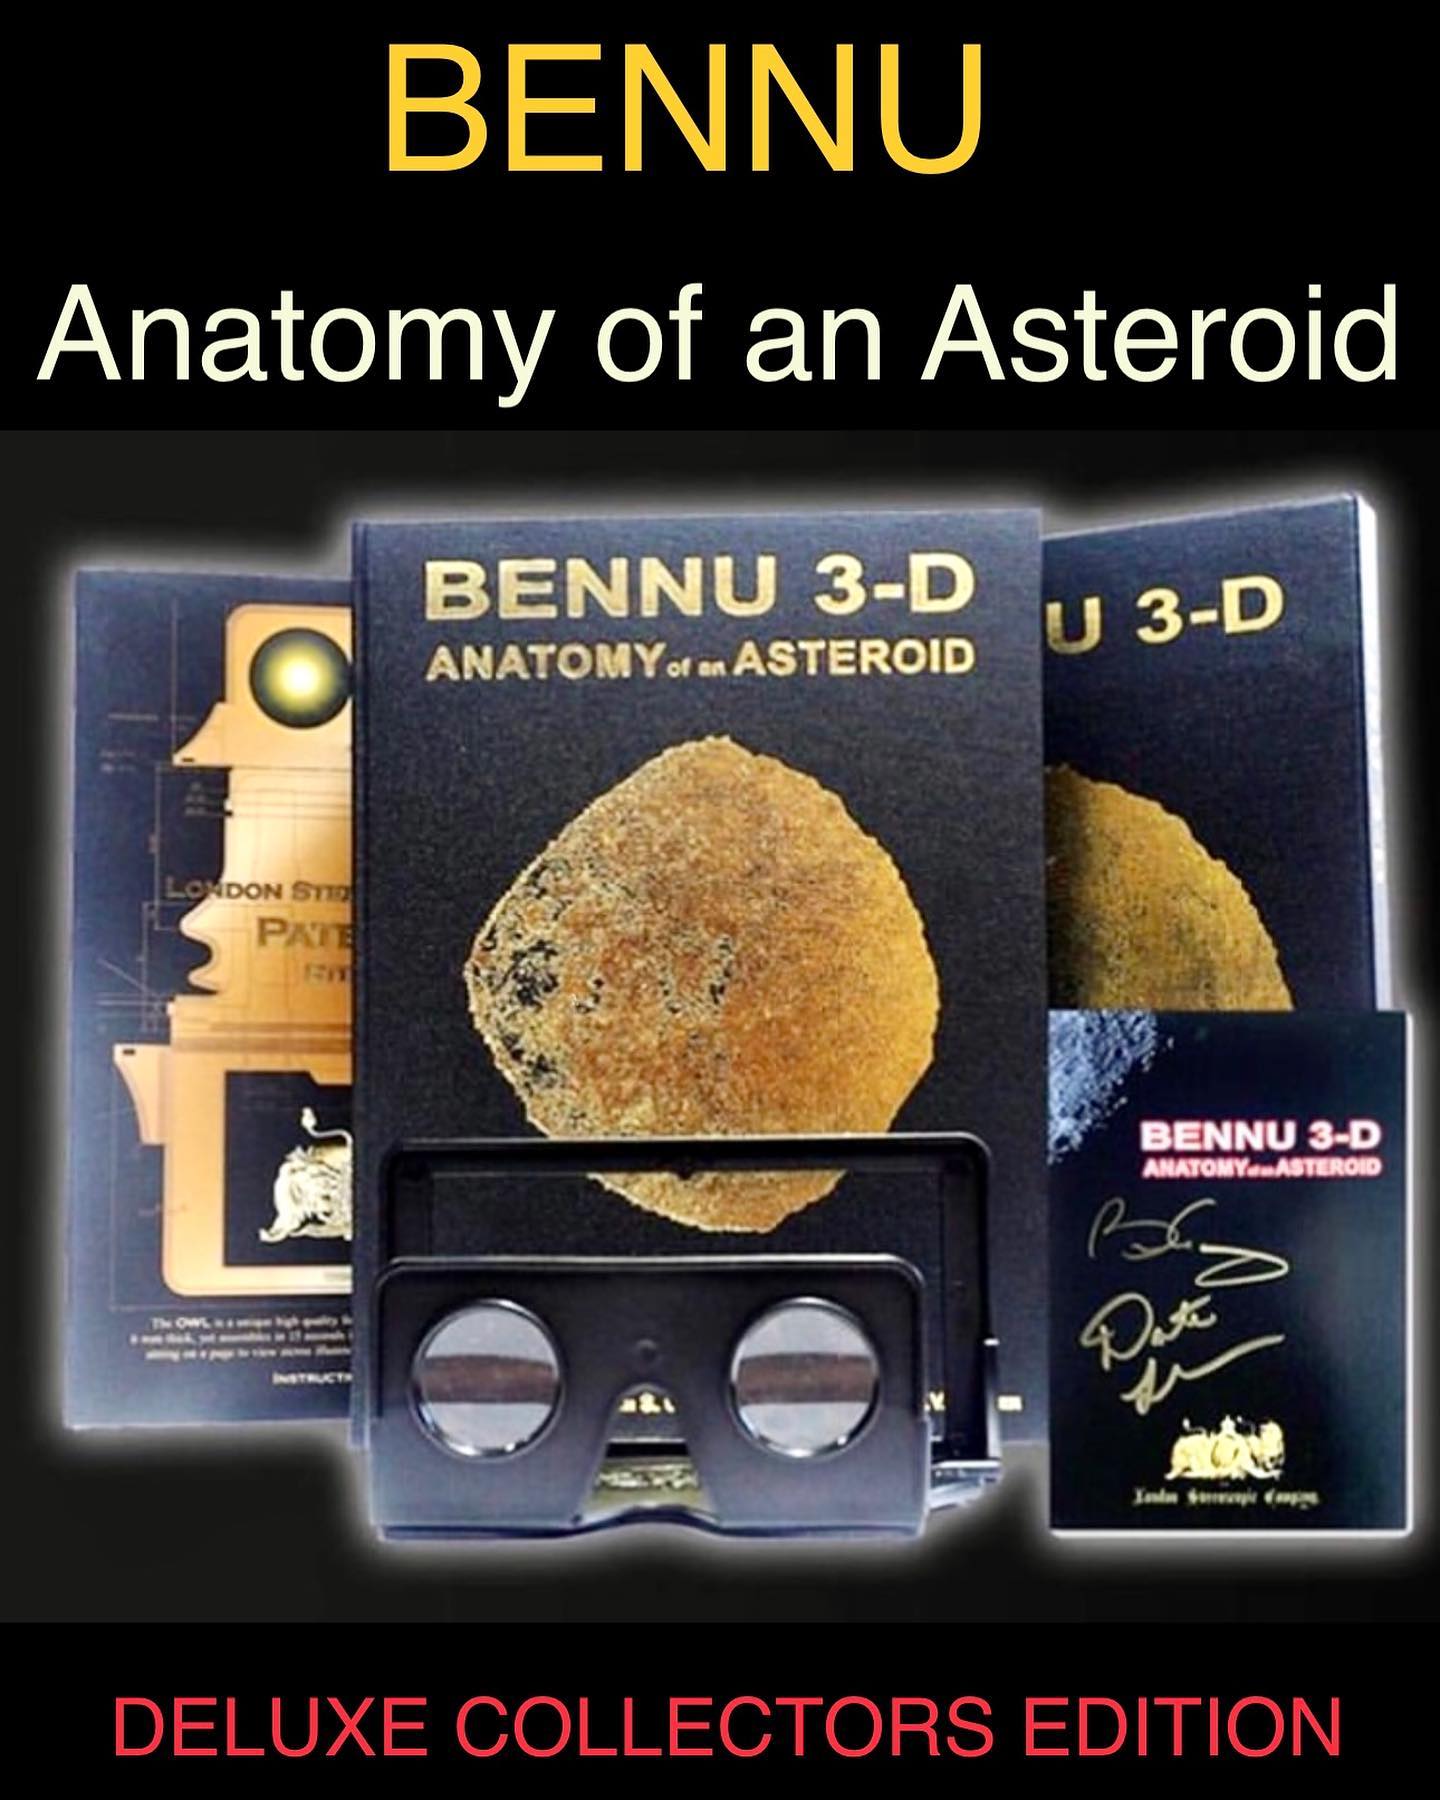 Стереоскопические изображения астероида Бенну